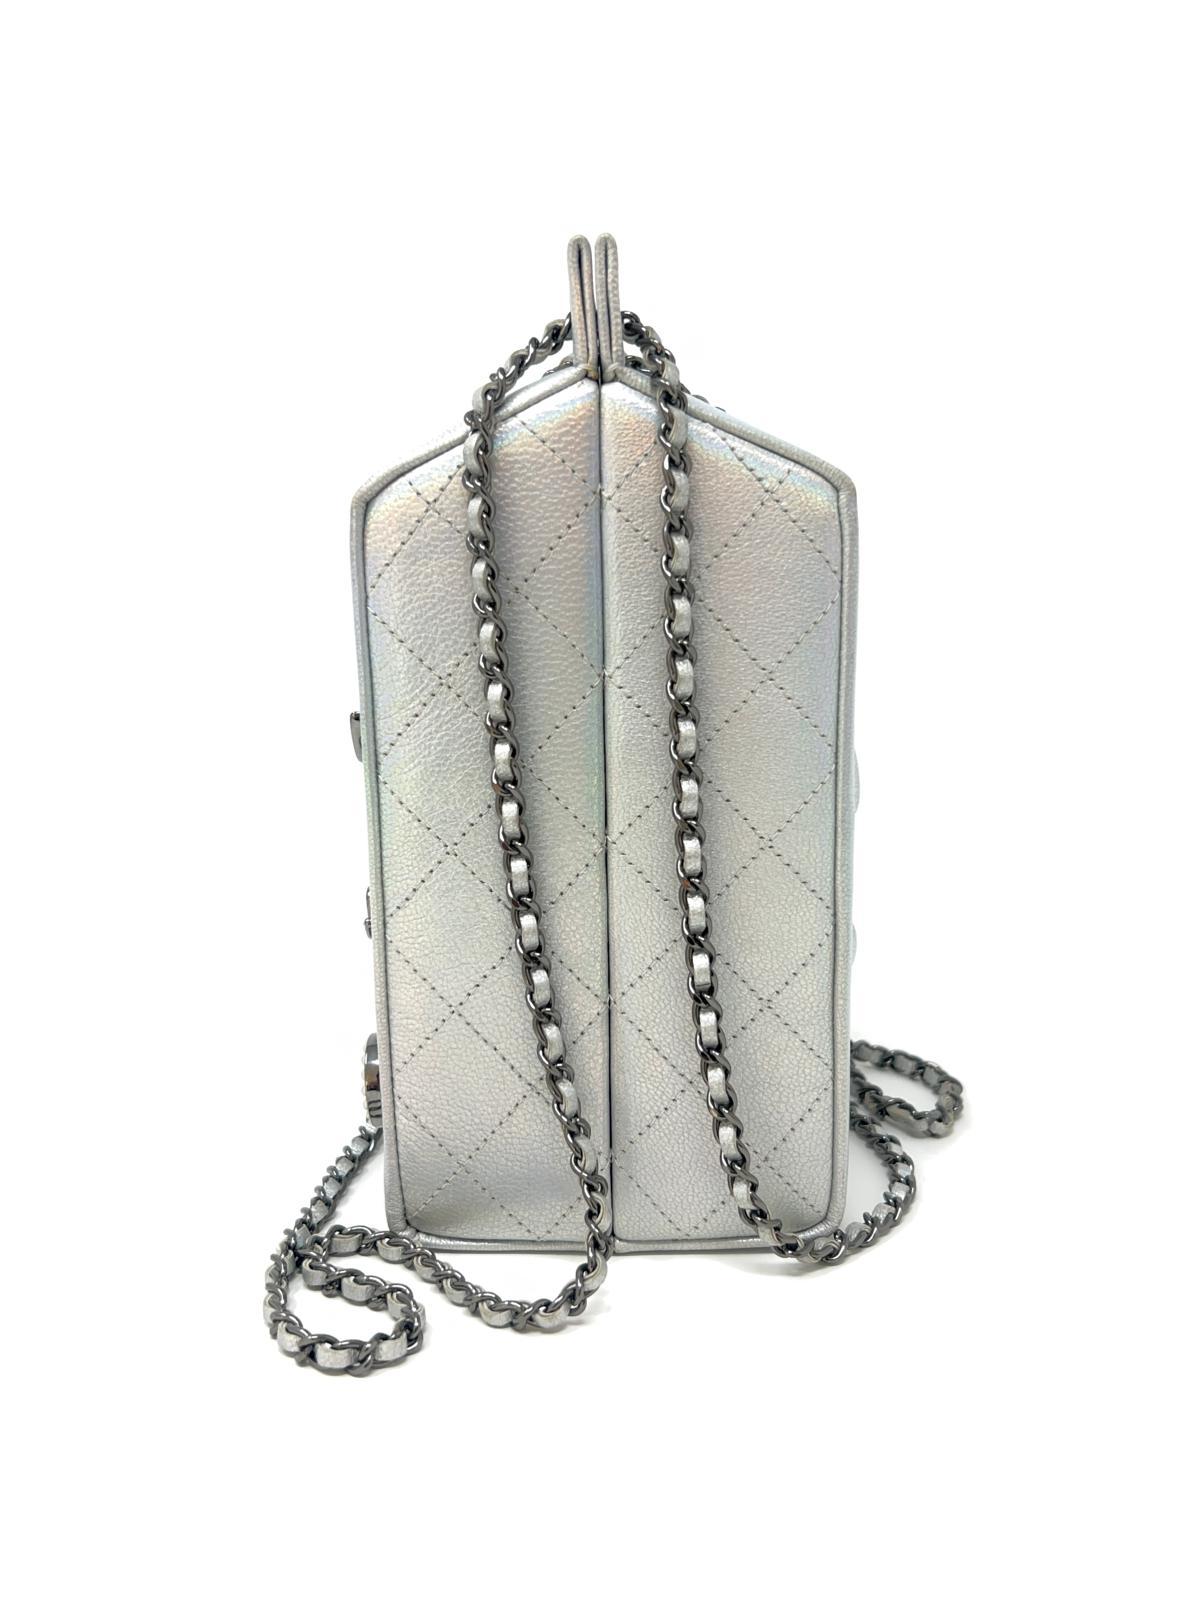 Chanel Iridescent Lait de Coco Milk Carton Bag Ruthenium Hardware 2014 For Sale 4